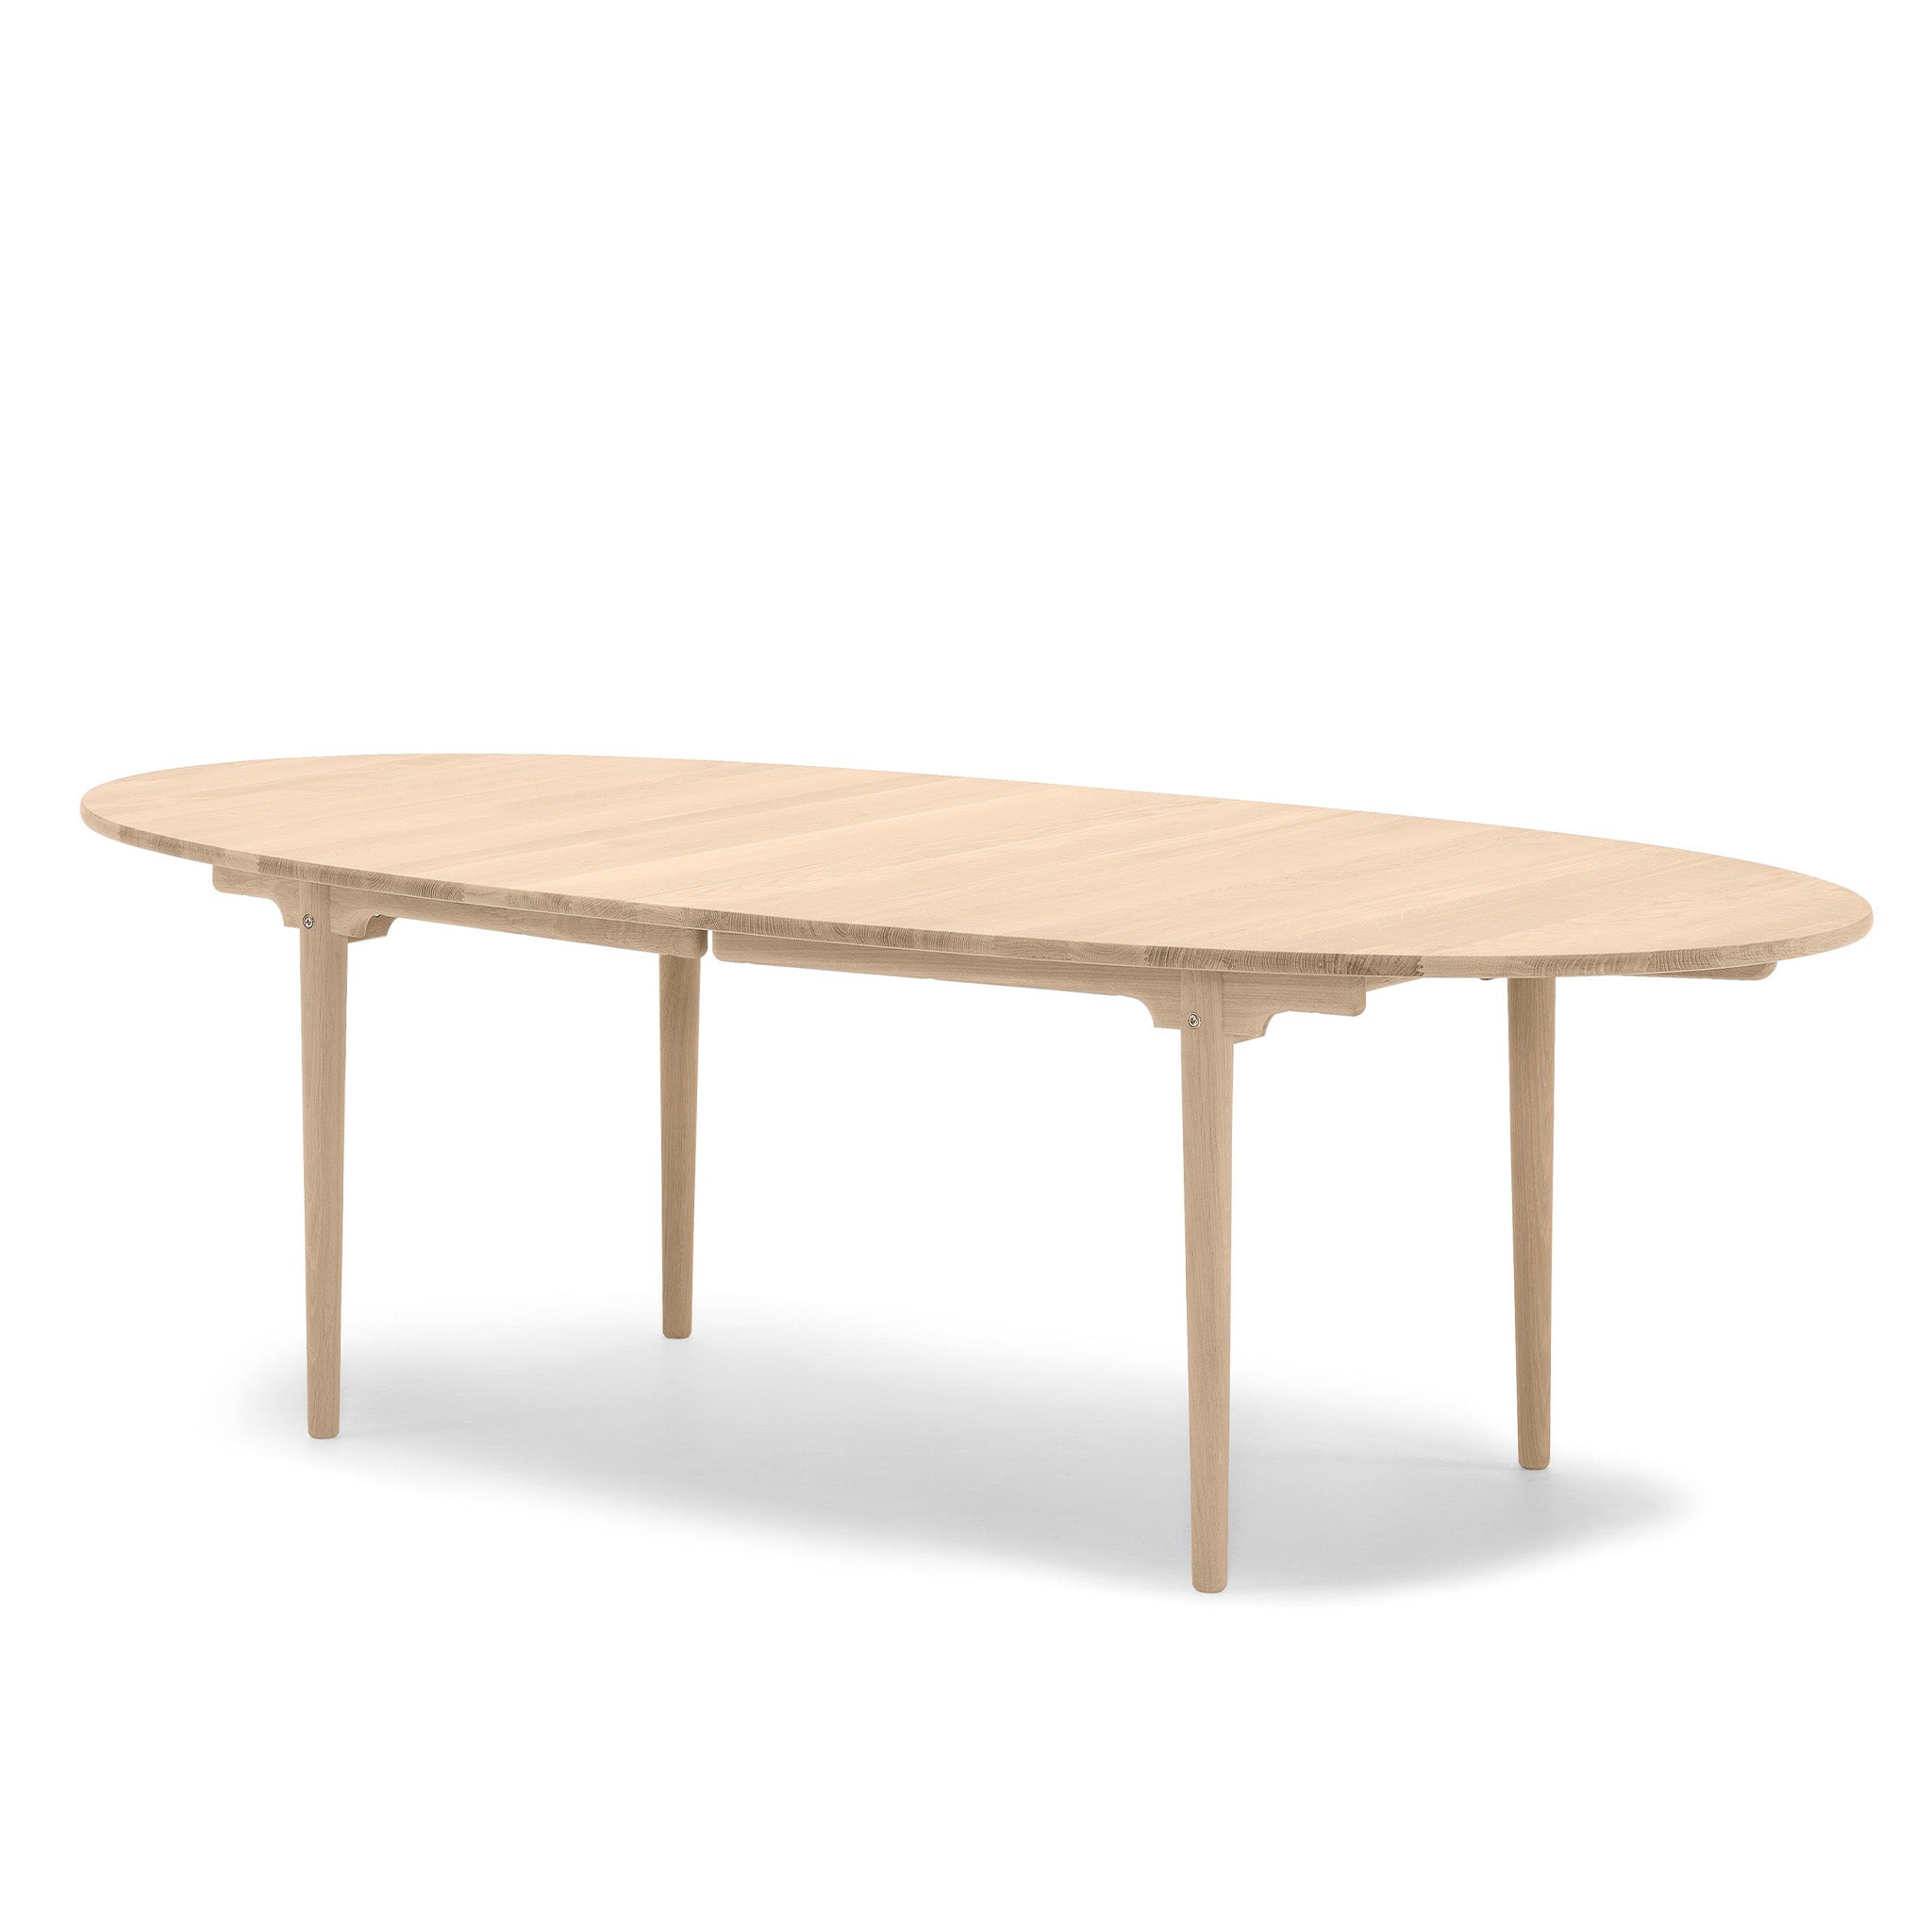 CH339 Table by Carl Hansen & Søn